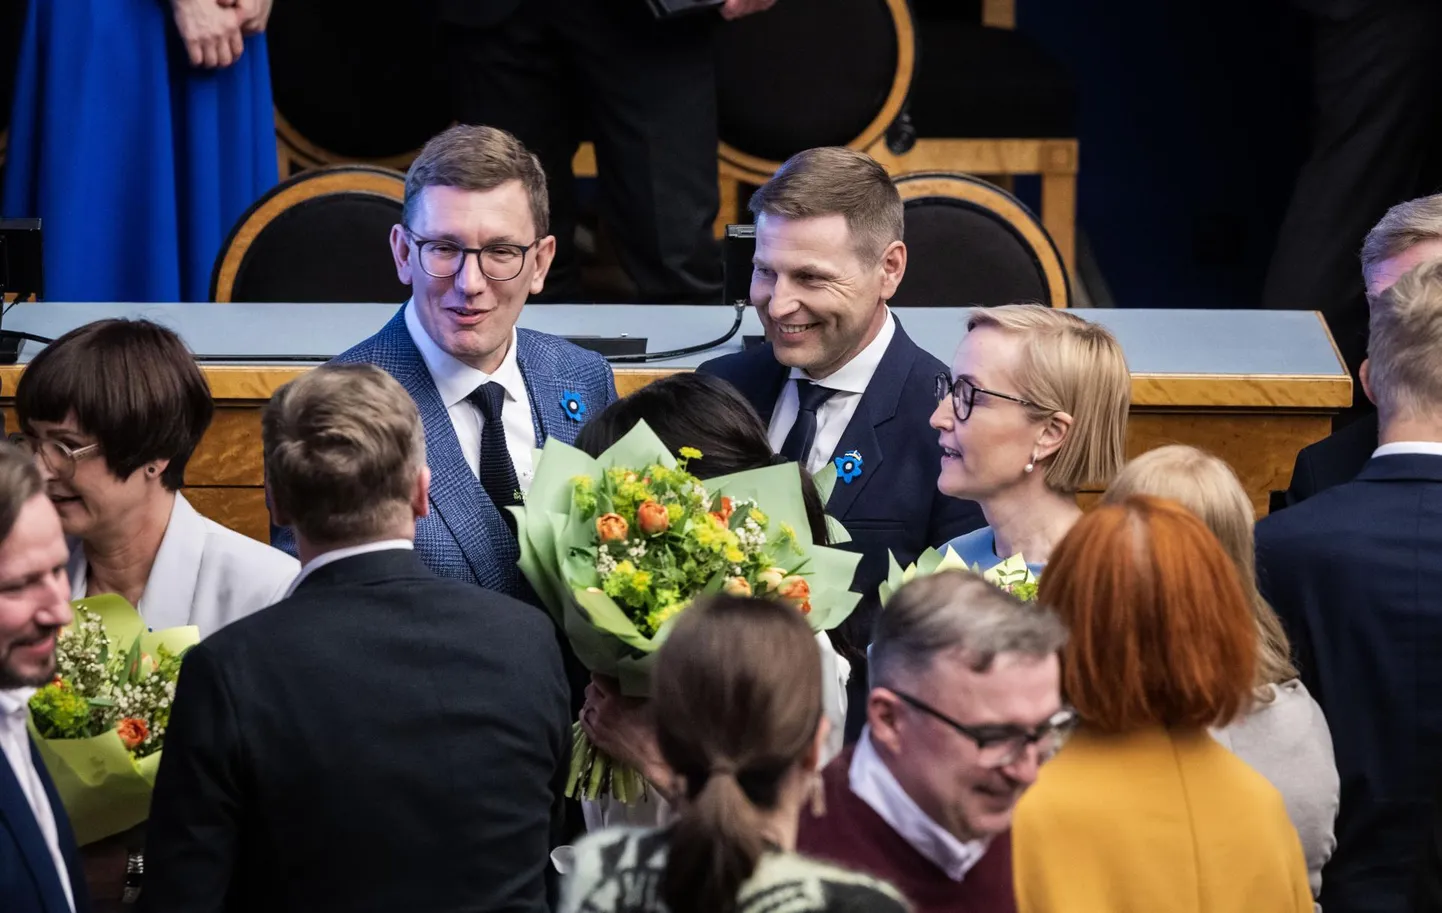 Kõige keerulisema valiku peab Kristen Michal (vasakul) tegema kaitseminister Hanno Pevkuri (paremal) osas – tema väljavahetamine mõjutaks avalikkuse arvamust.